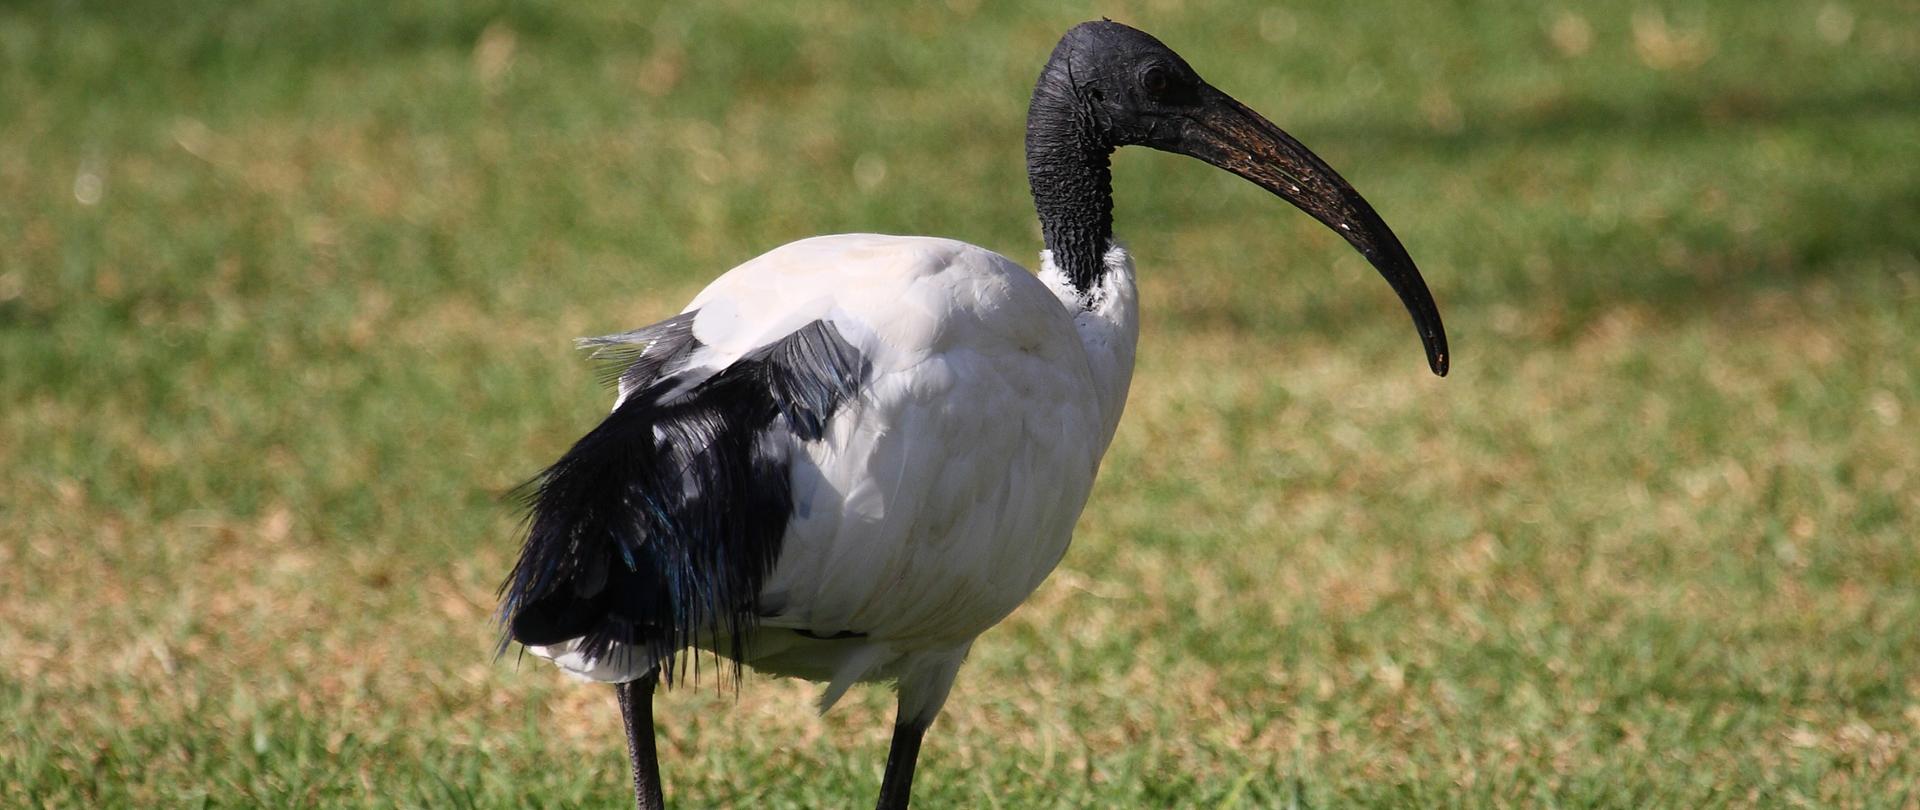 Po zielonej trawie chodzi ibis czczony o białych piórach, czarnej szyi, nogach, głowie i dziobie.